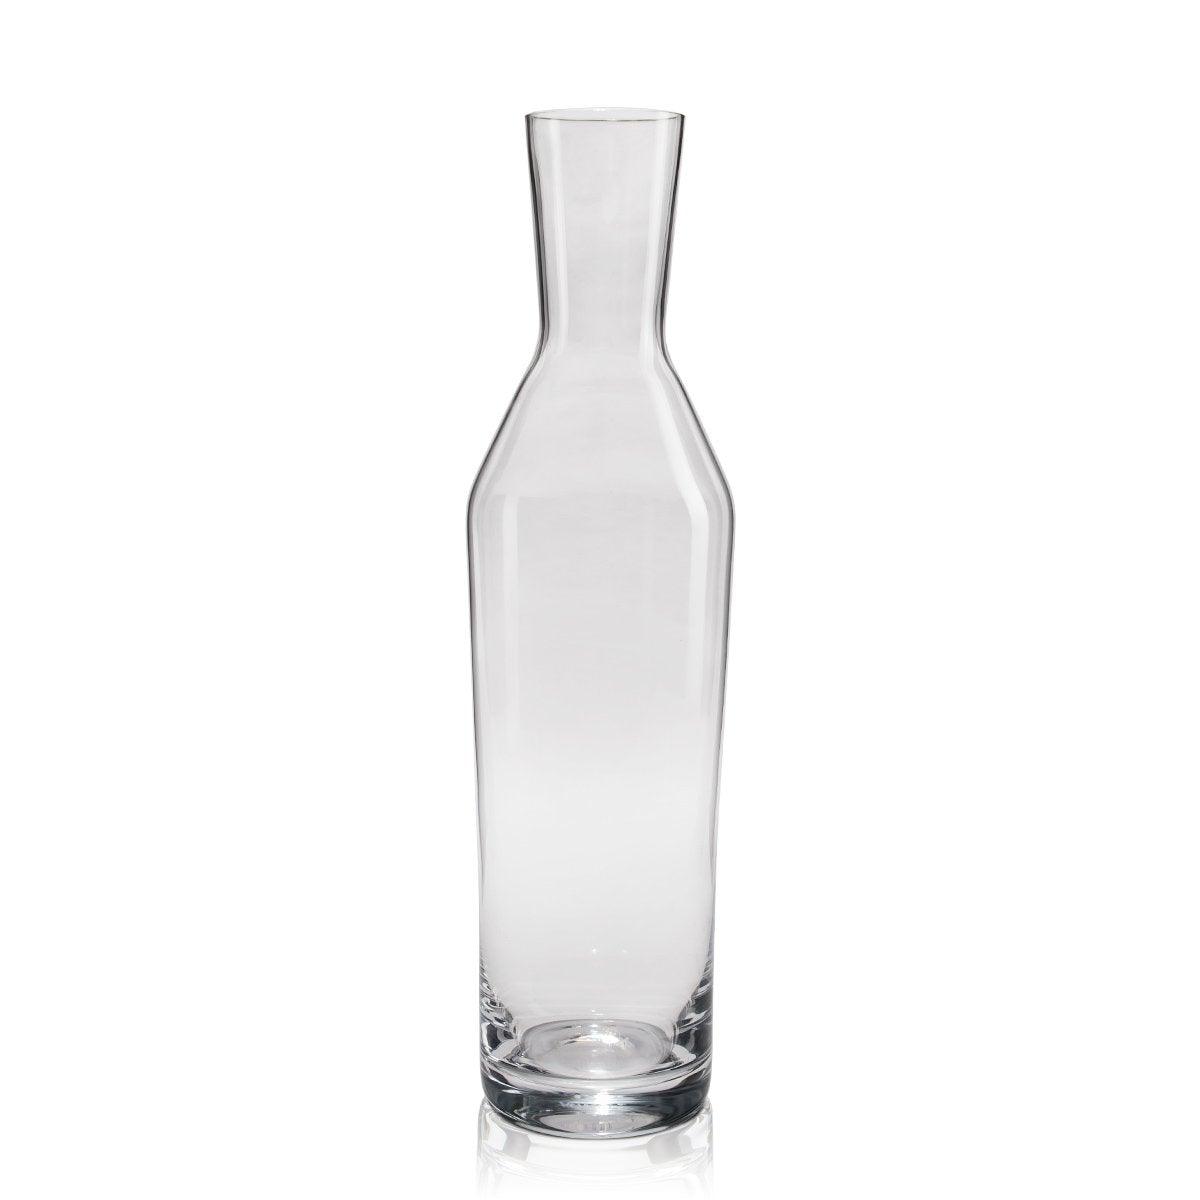 Schott Zwiesel Water N3 Basic Bar Transparent Glass